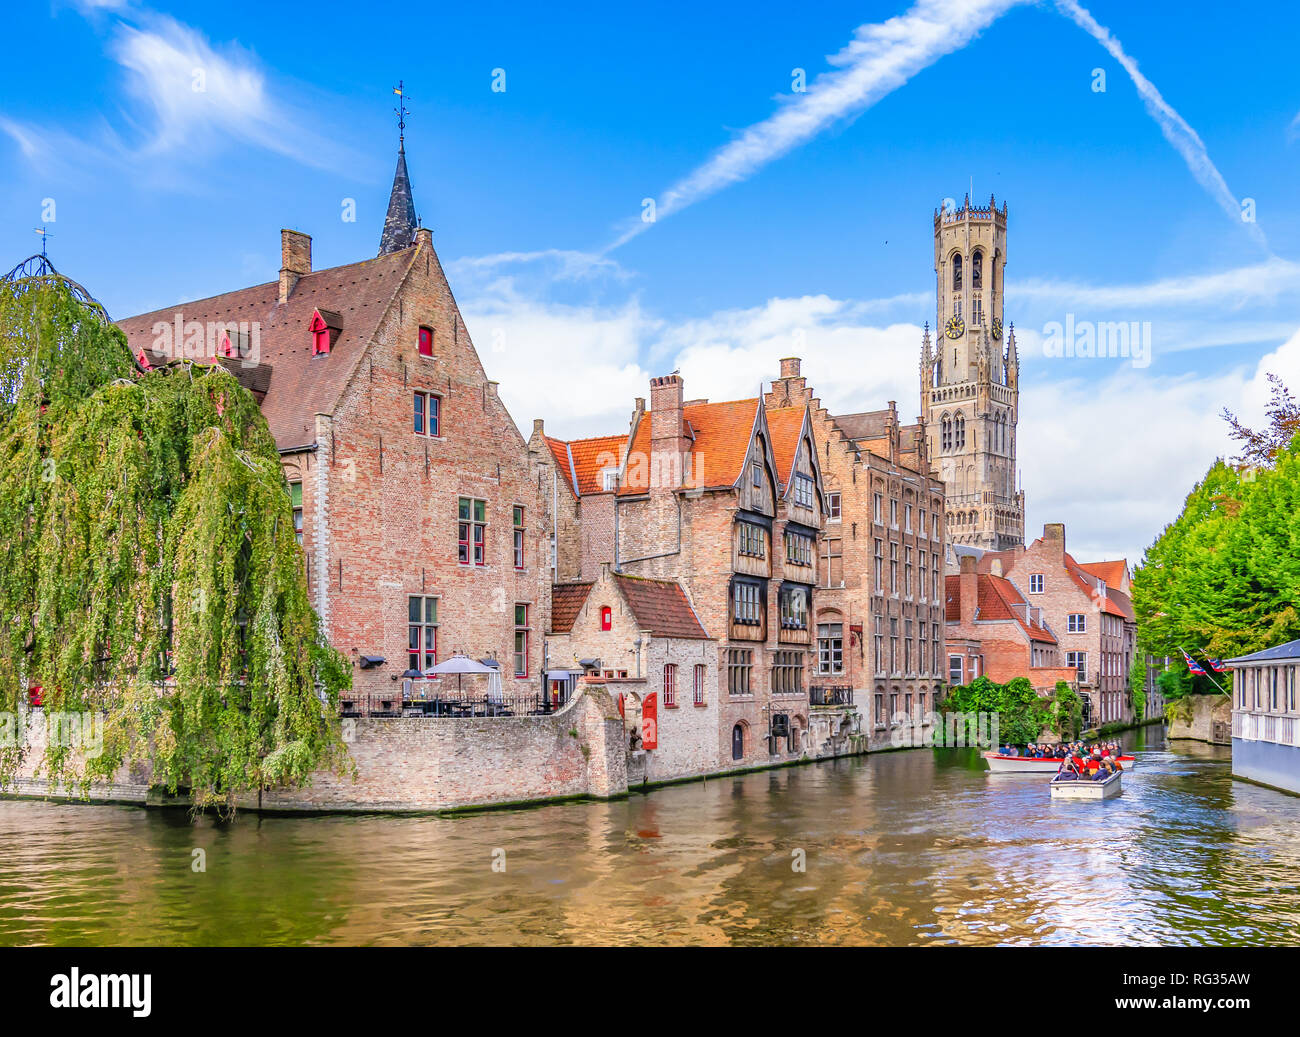 Point de vue populaire en centre-ville avec des bâtiments en brique traditionnelle le long du canal de Bruges, Belgique Banque D'Images